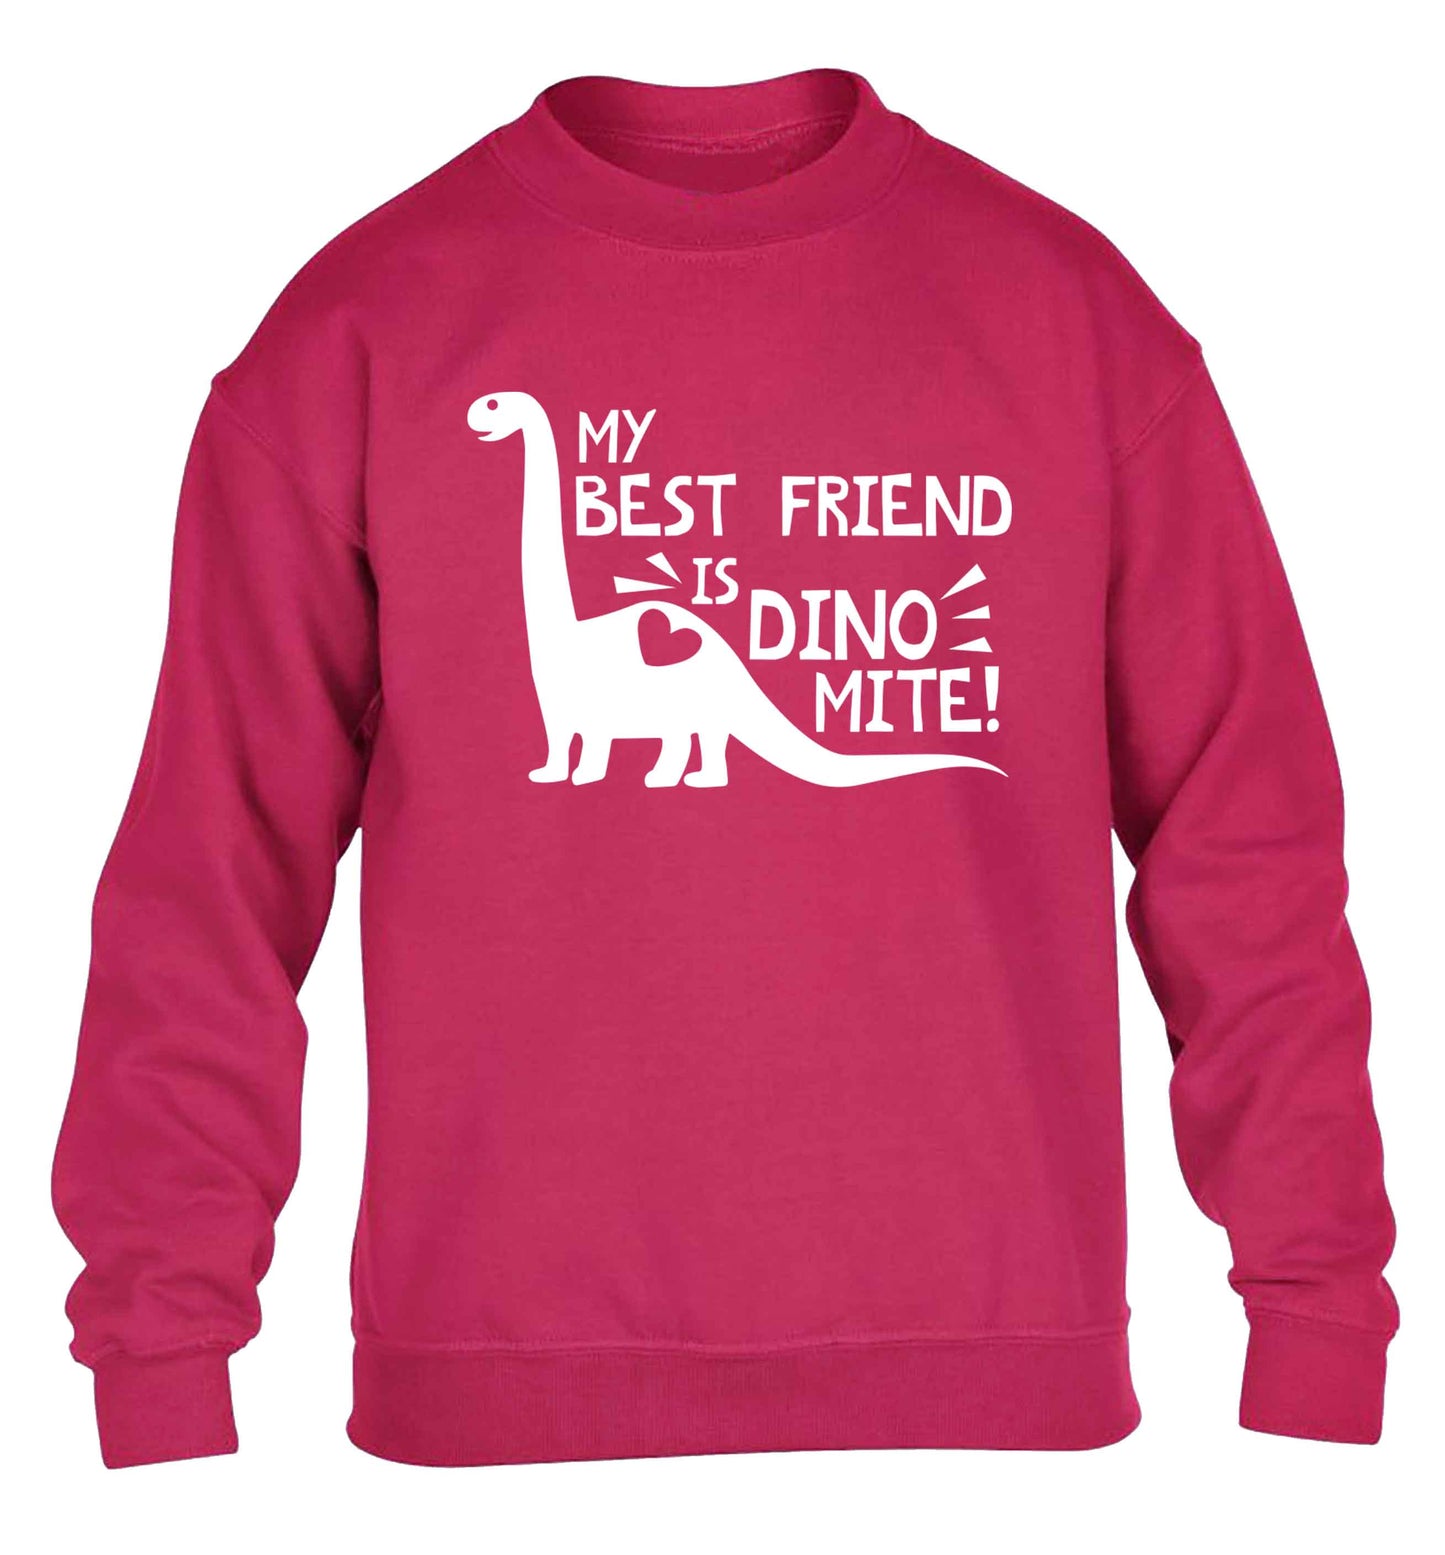 My best friend is dinomite! children's pink sweater 12-13 Years